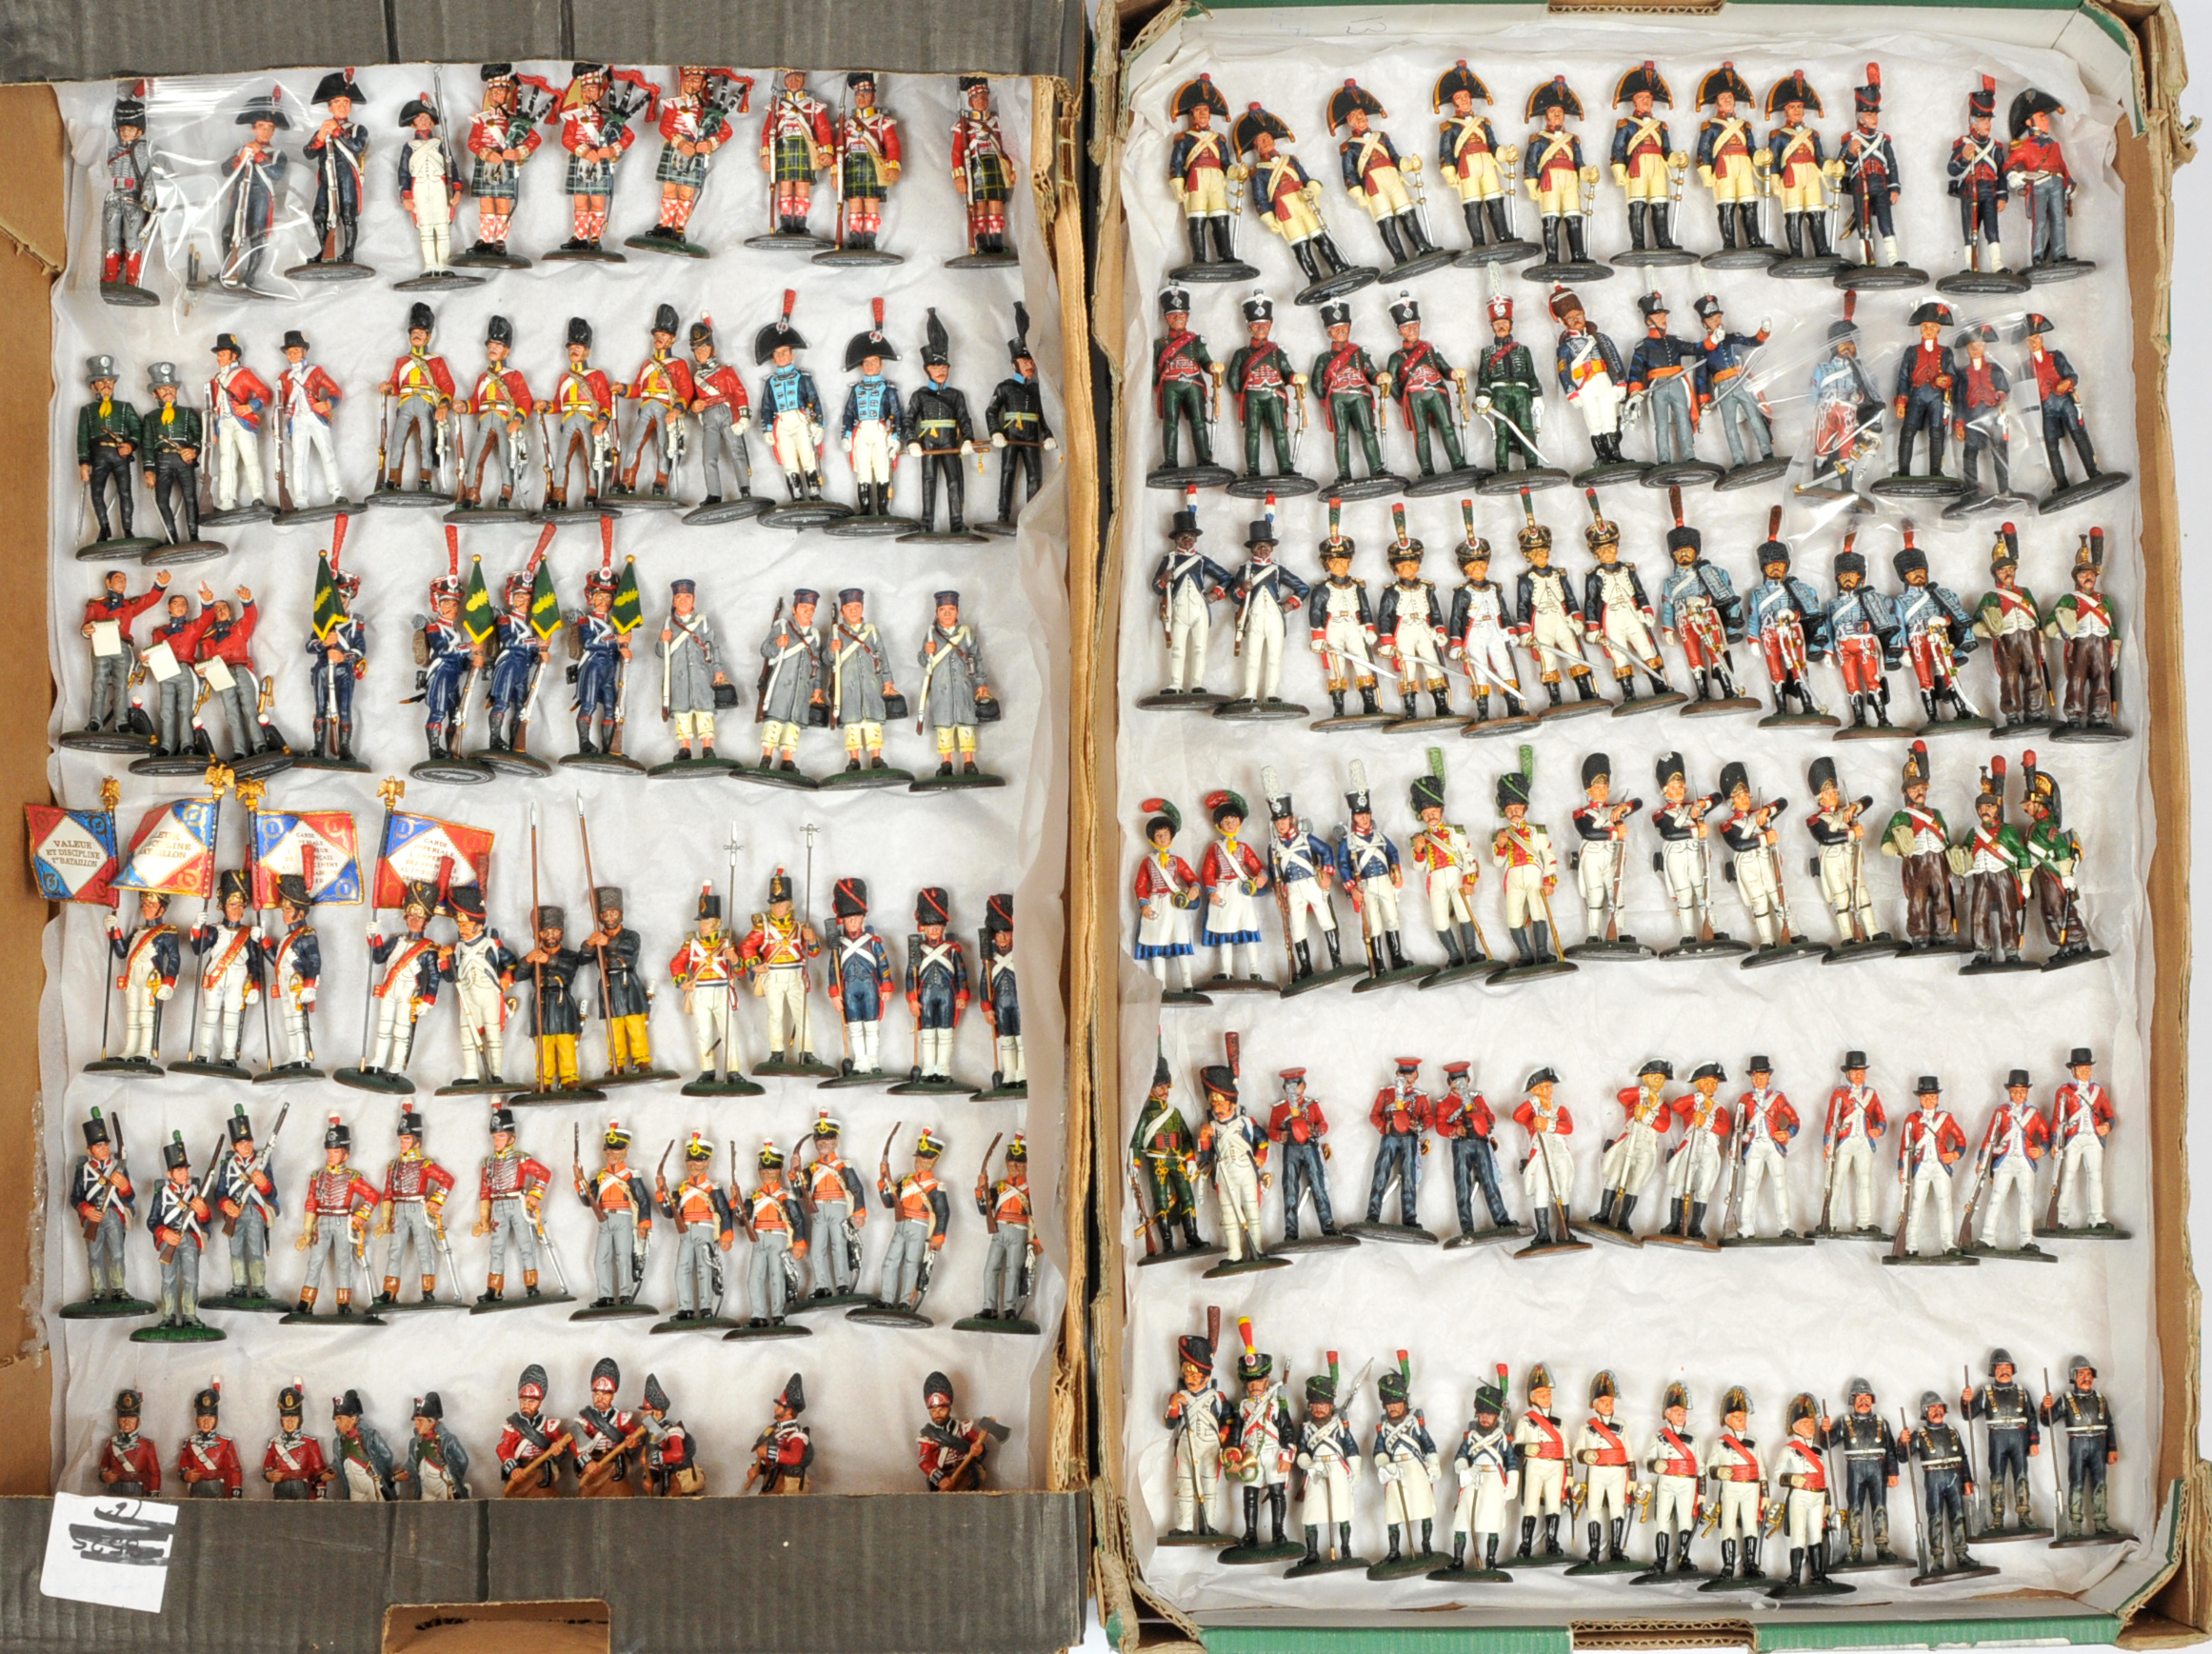 Del Prado - Quantity of Unboxed Metal Figures